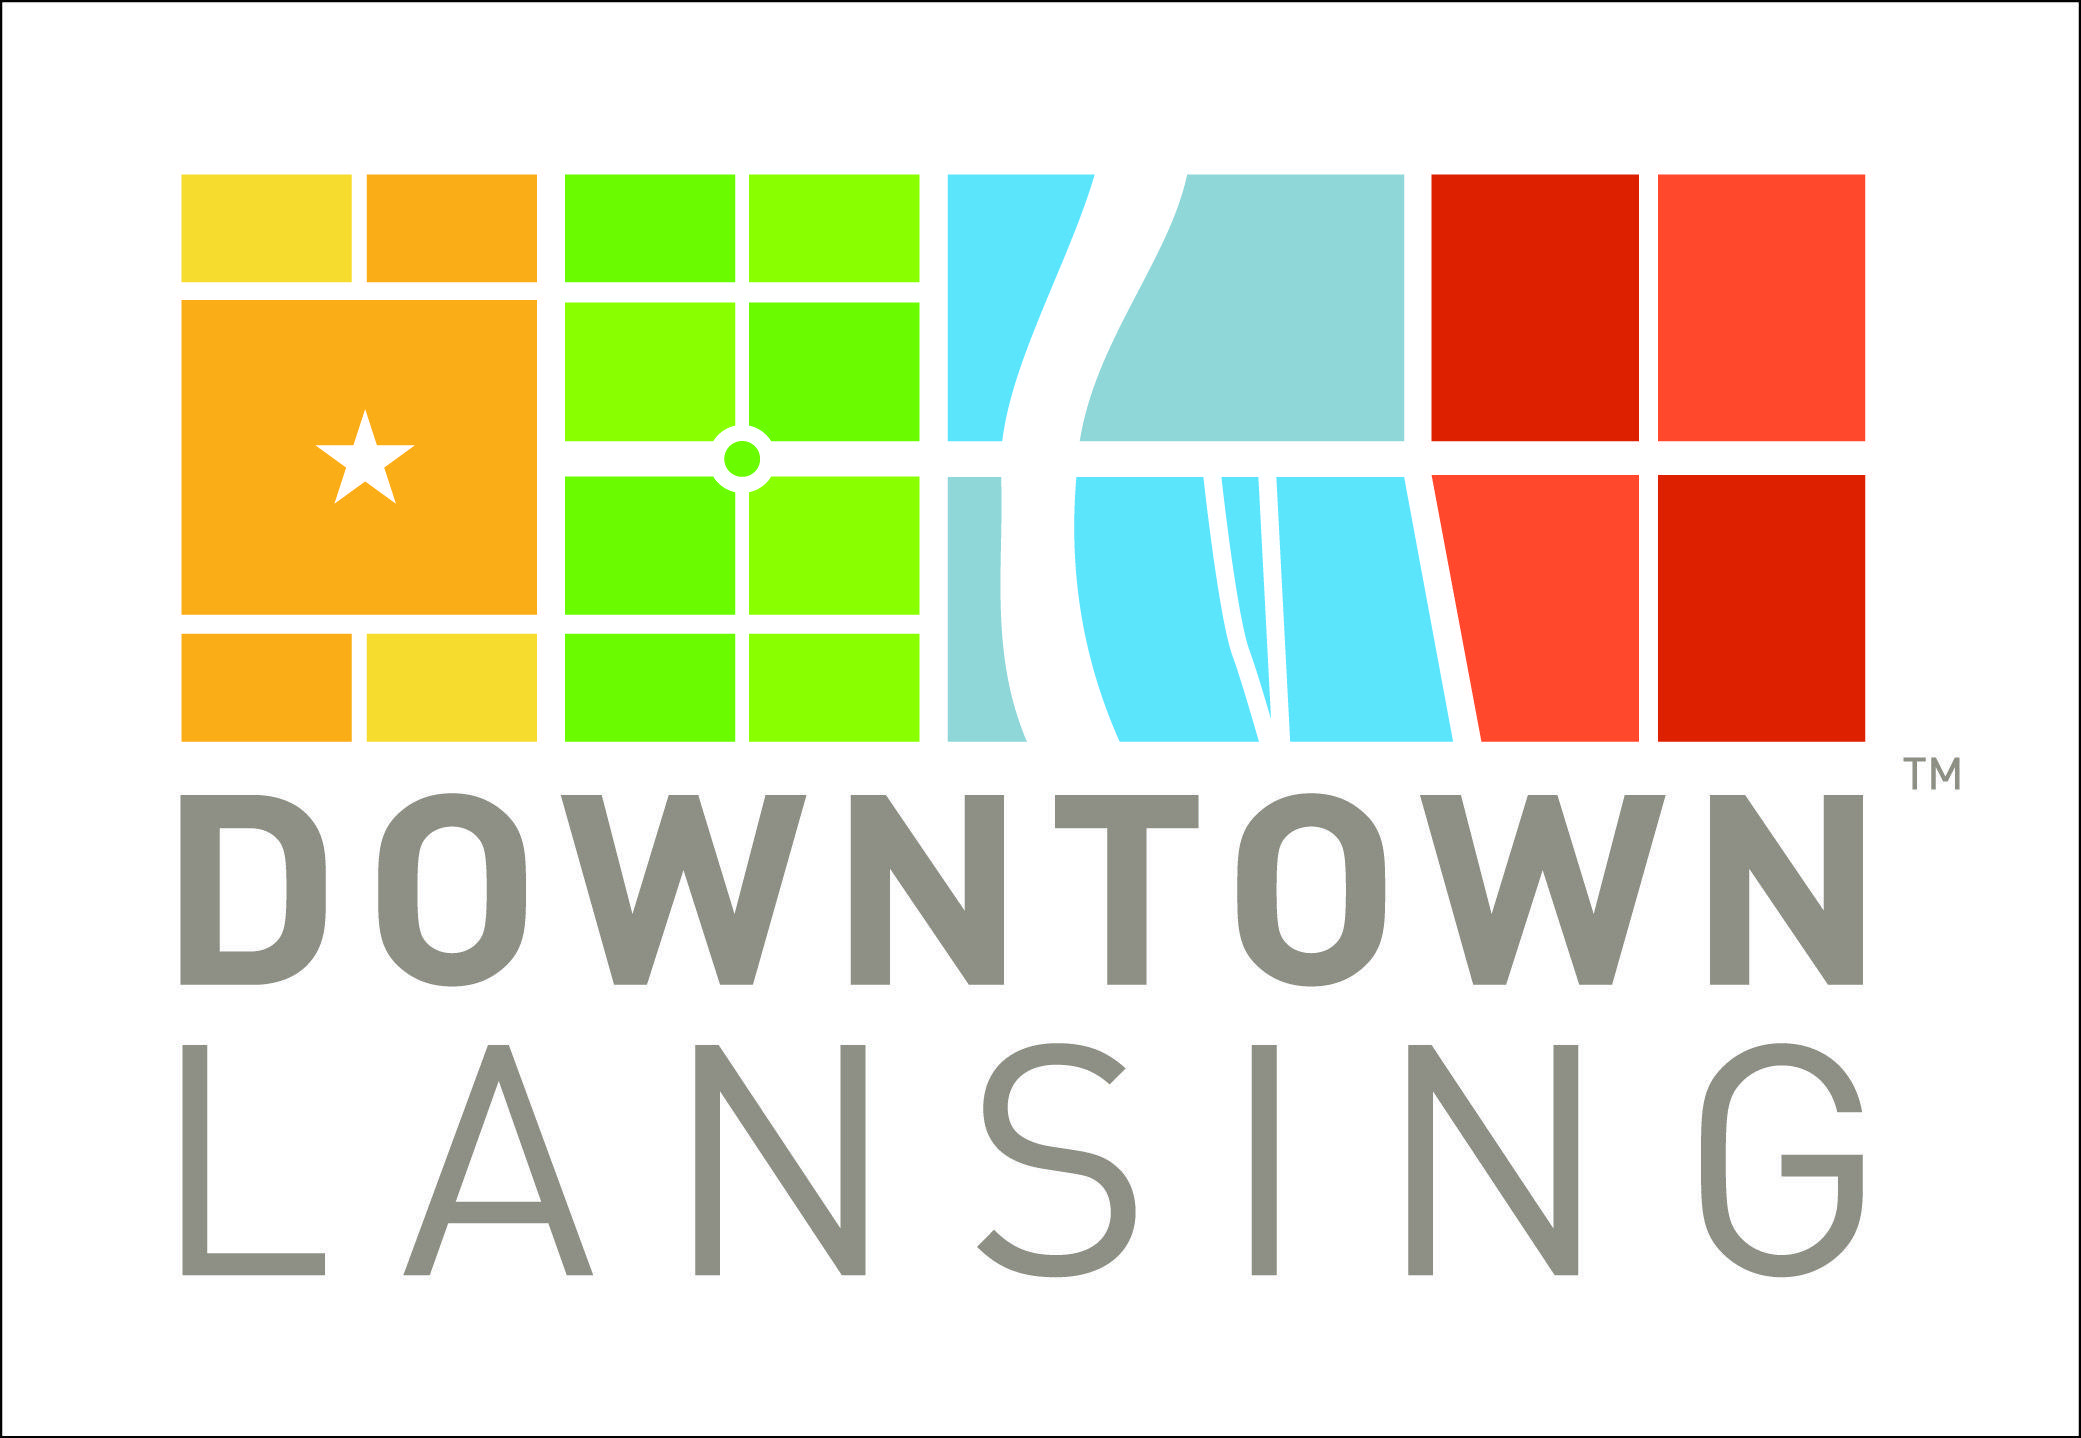 Lansing Logo - Downtown Lansing Inc.